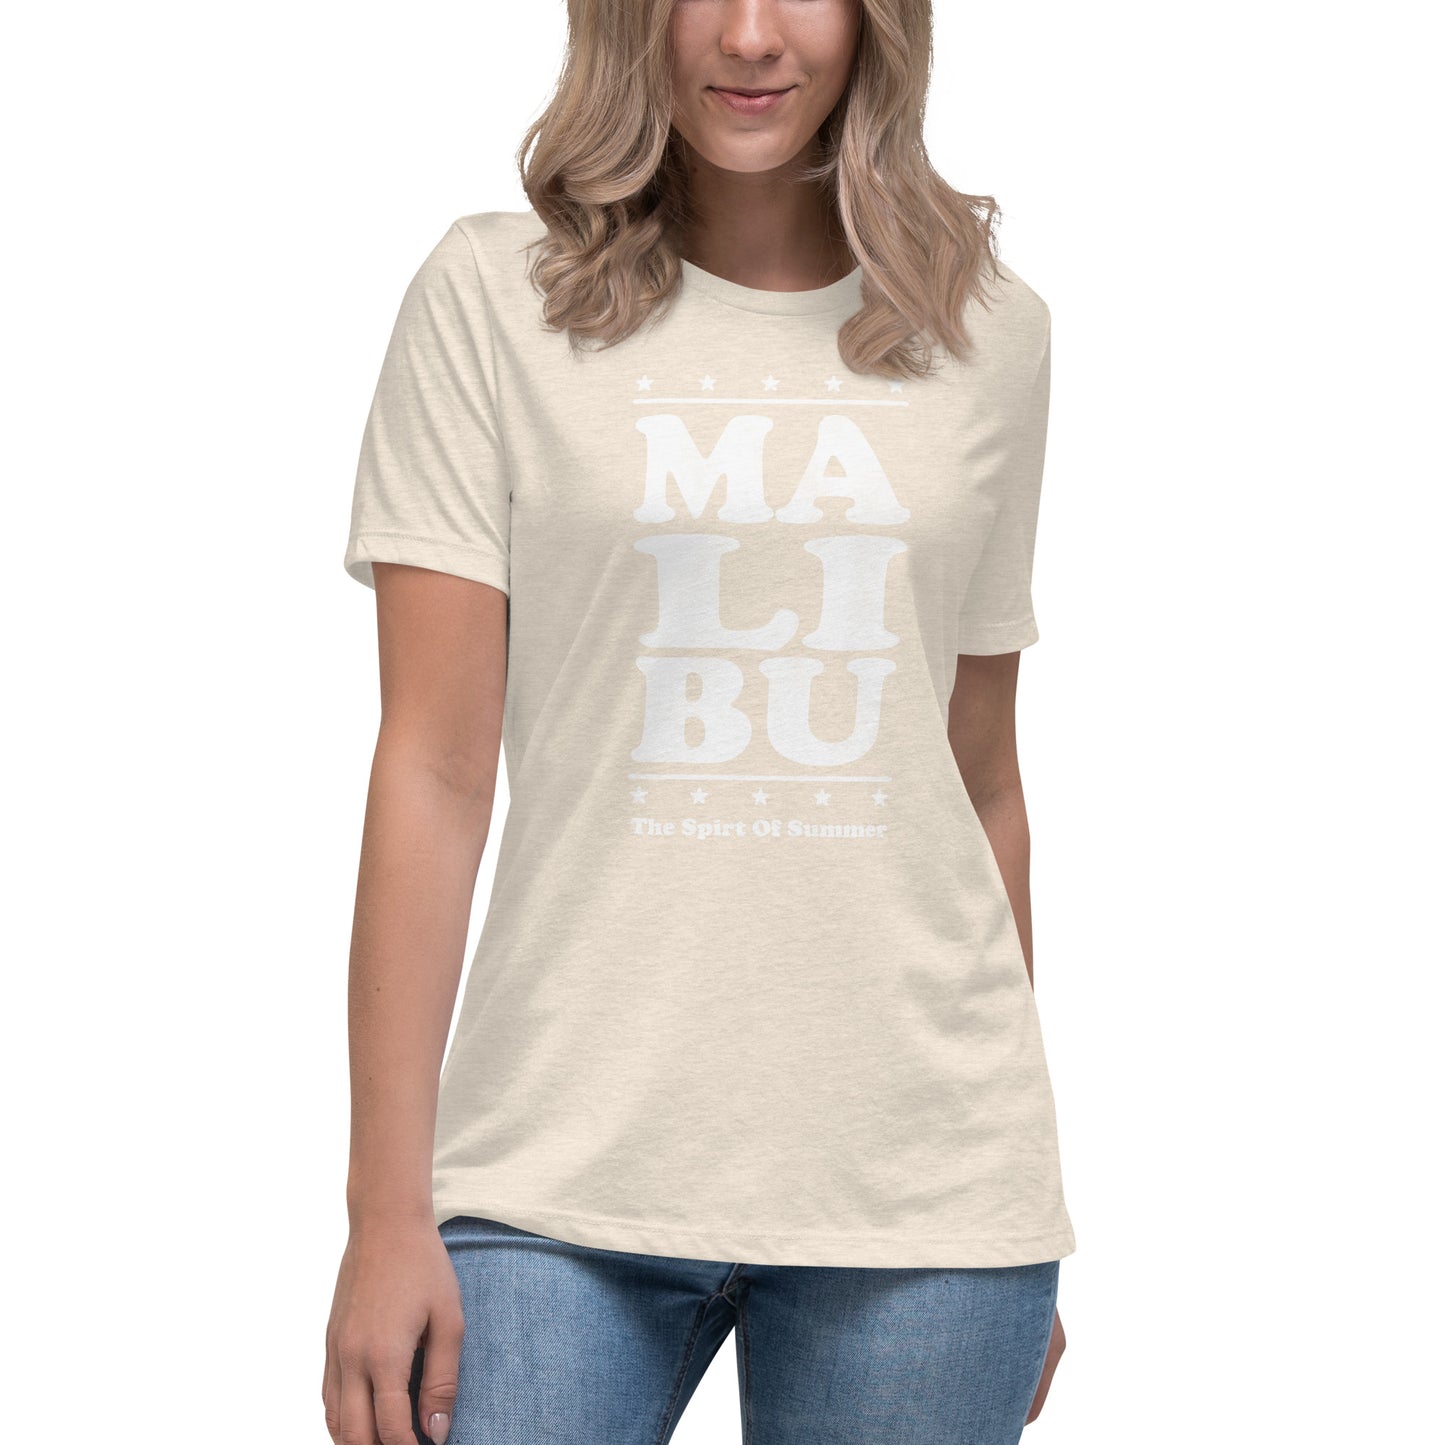 Malibu Women's Relaxed T-Shirt